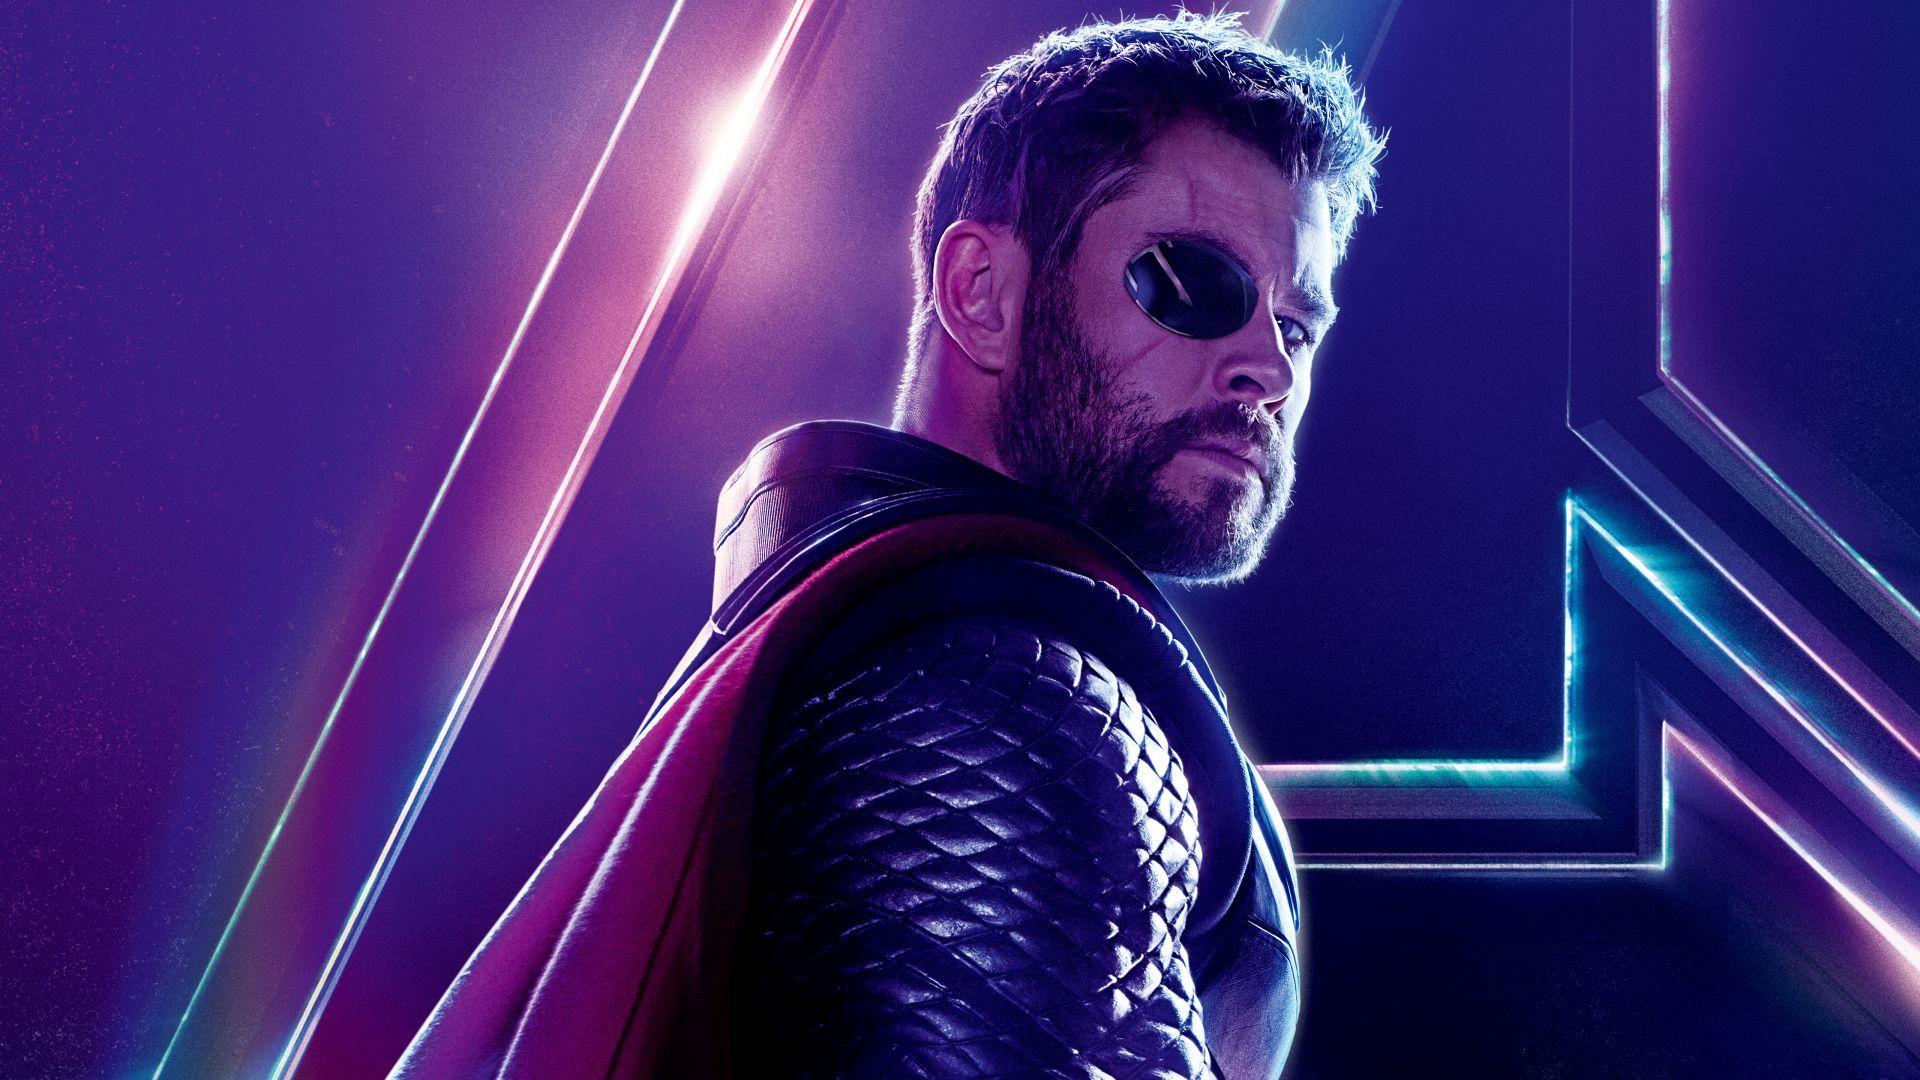 Download wallpaper of Avengers: Infinity War, Chris Hemsworth